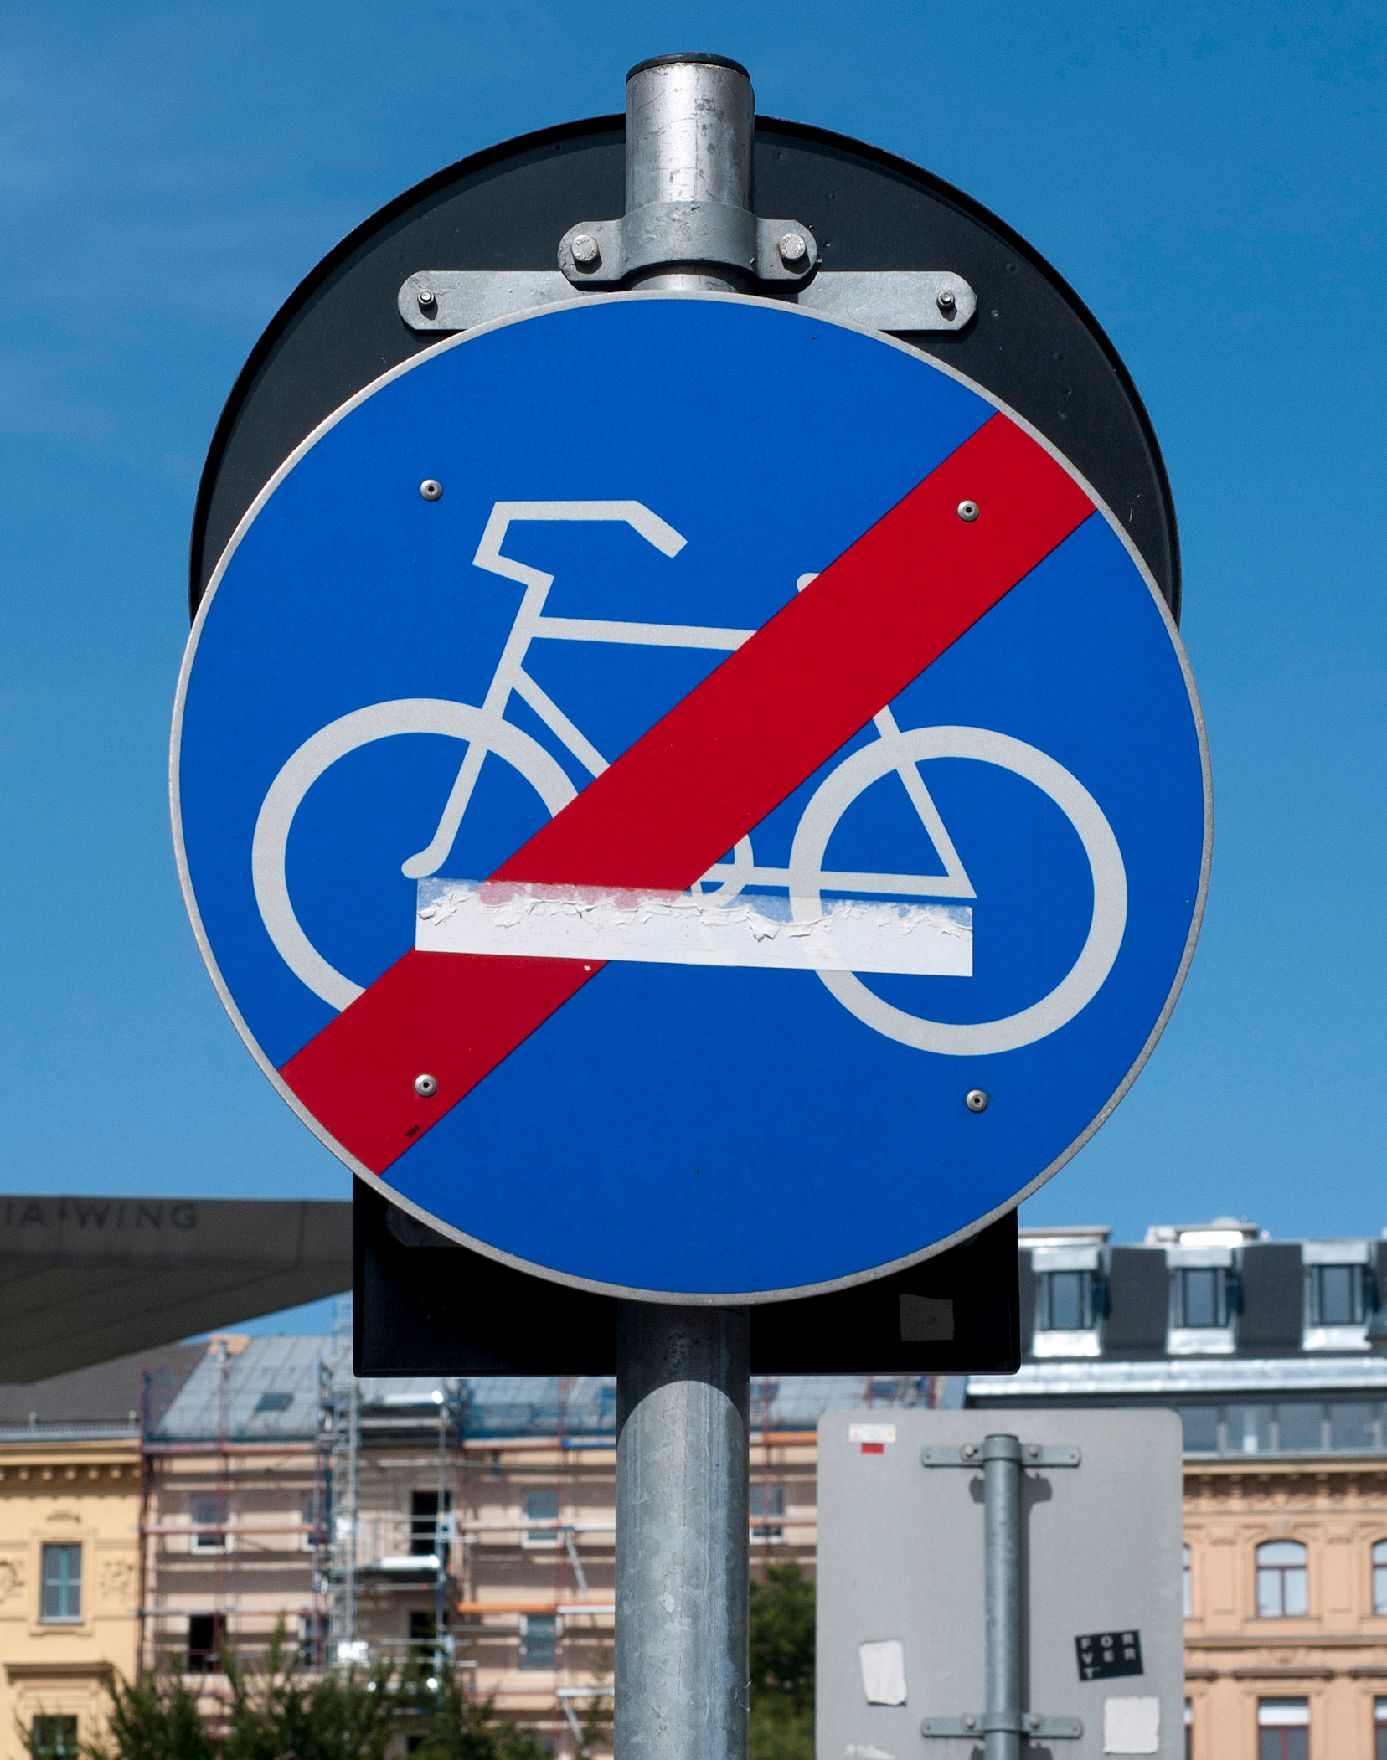 Verkehrsschild "Ende des Radweges". Schlagworte: Beschriftung, Fahrrad, Verkehr, Verkehrsschild, Verkehrszeichen